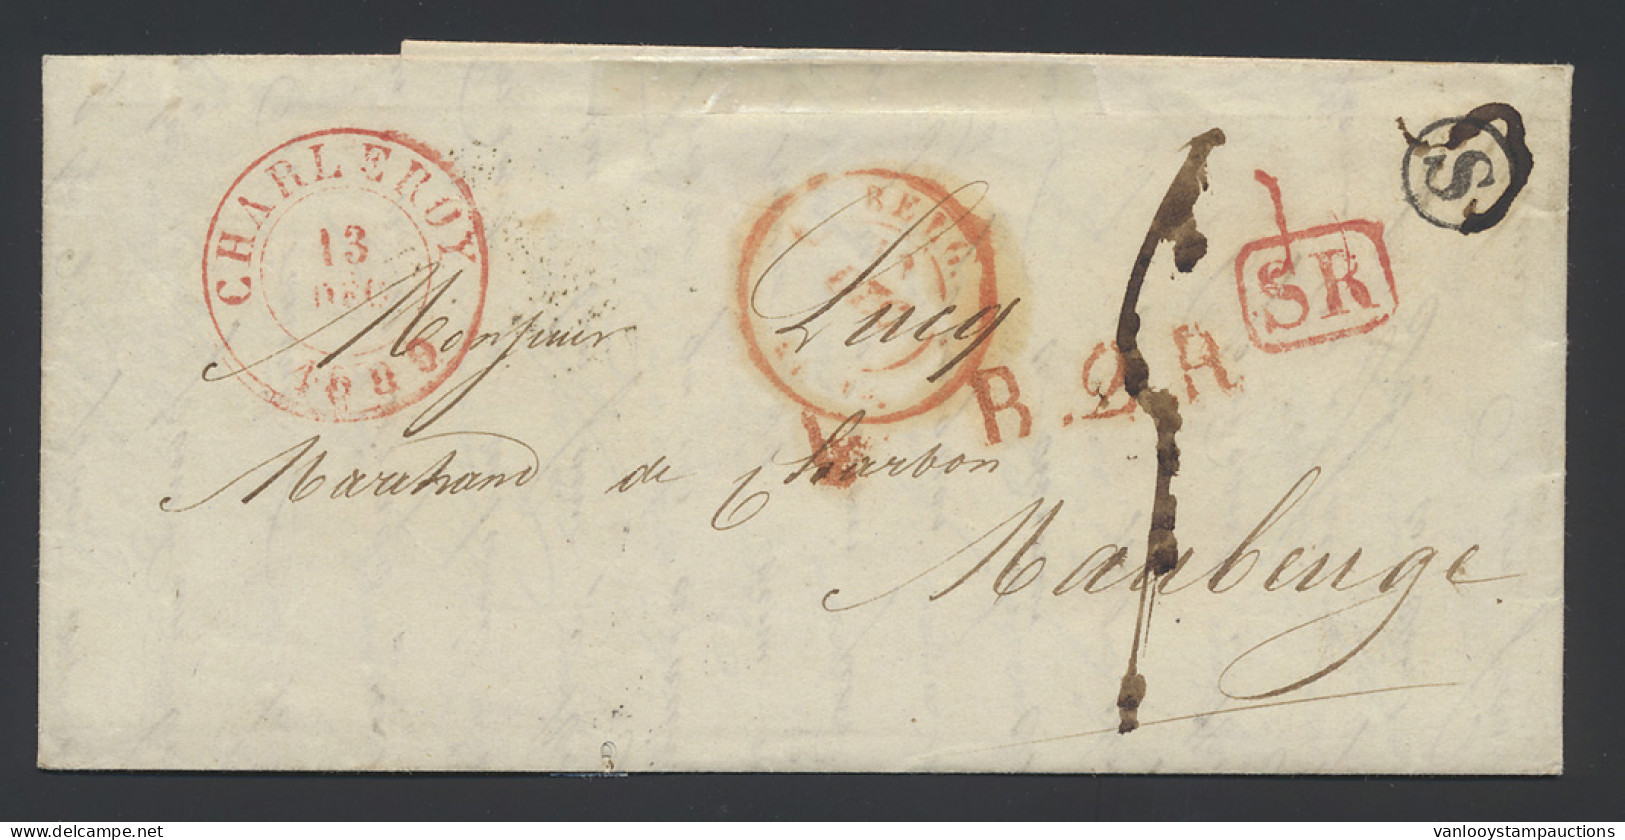 1839 Mooie Brief Met Postbusletter S In Cirkel, Rode SR-stempel, Dubbelcirkelstempel Charleroi 13 Dec 1839 Naar Maubeuge - 1830-1849 (Unabhängiges Belgien)